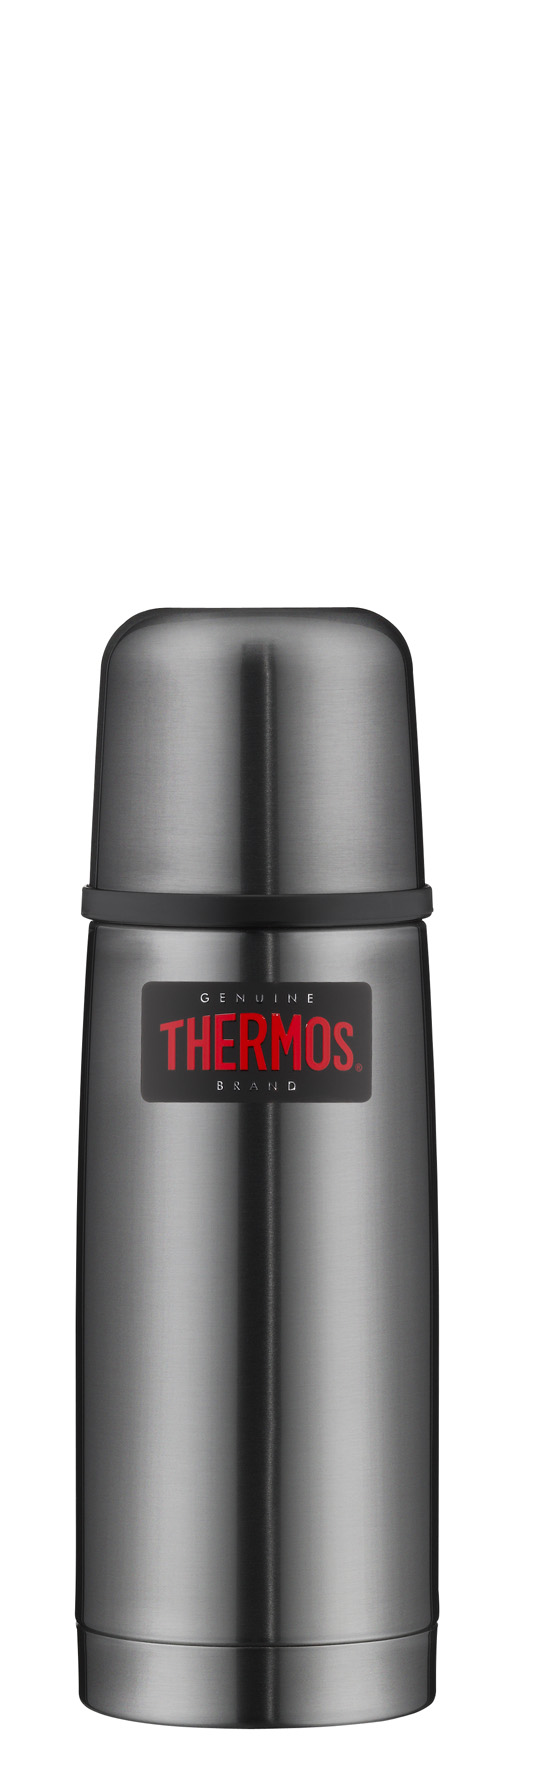 Ondis24 Thermos online günstig graul, 0.35 Isolierflasche kaufen light, L